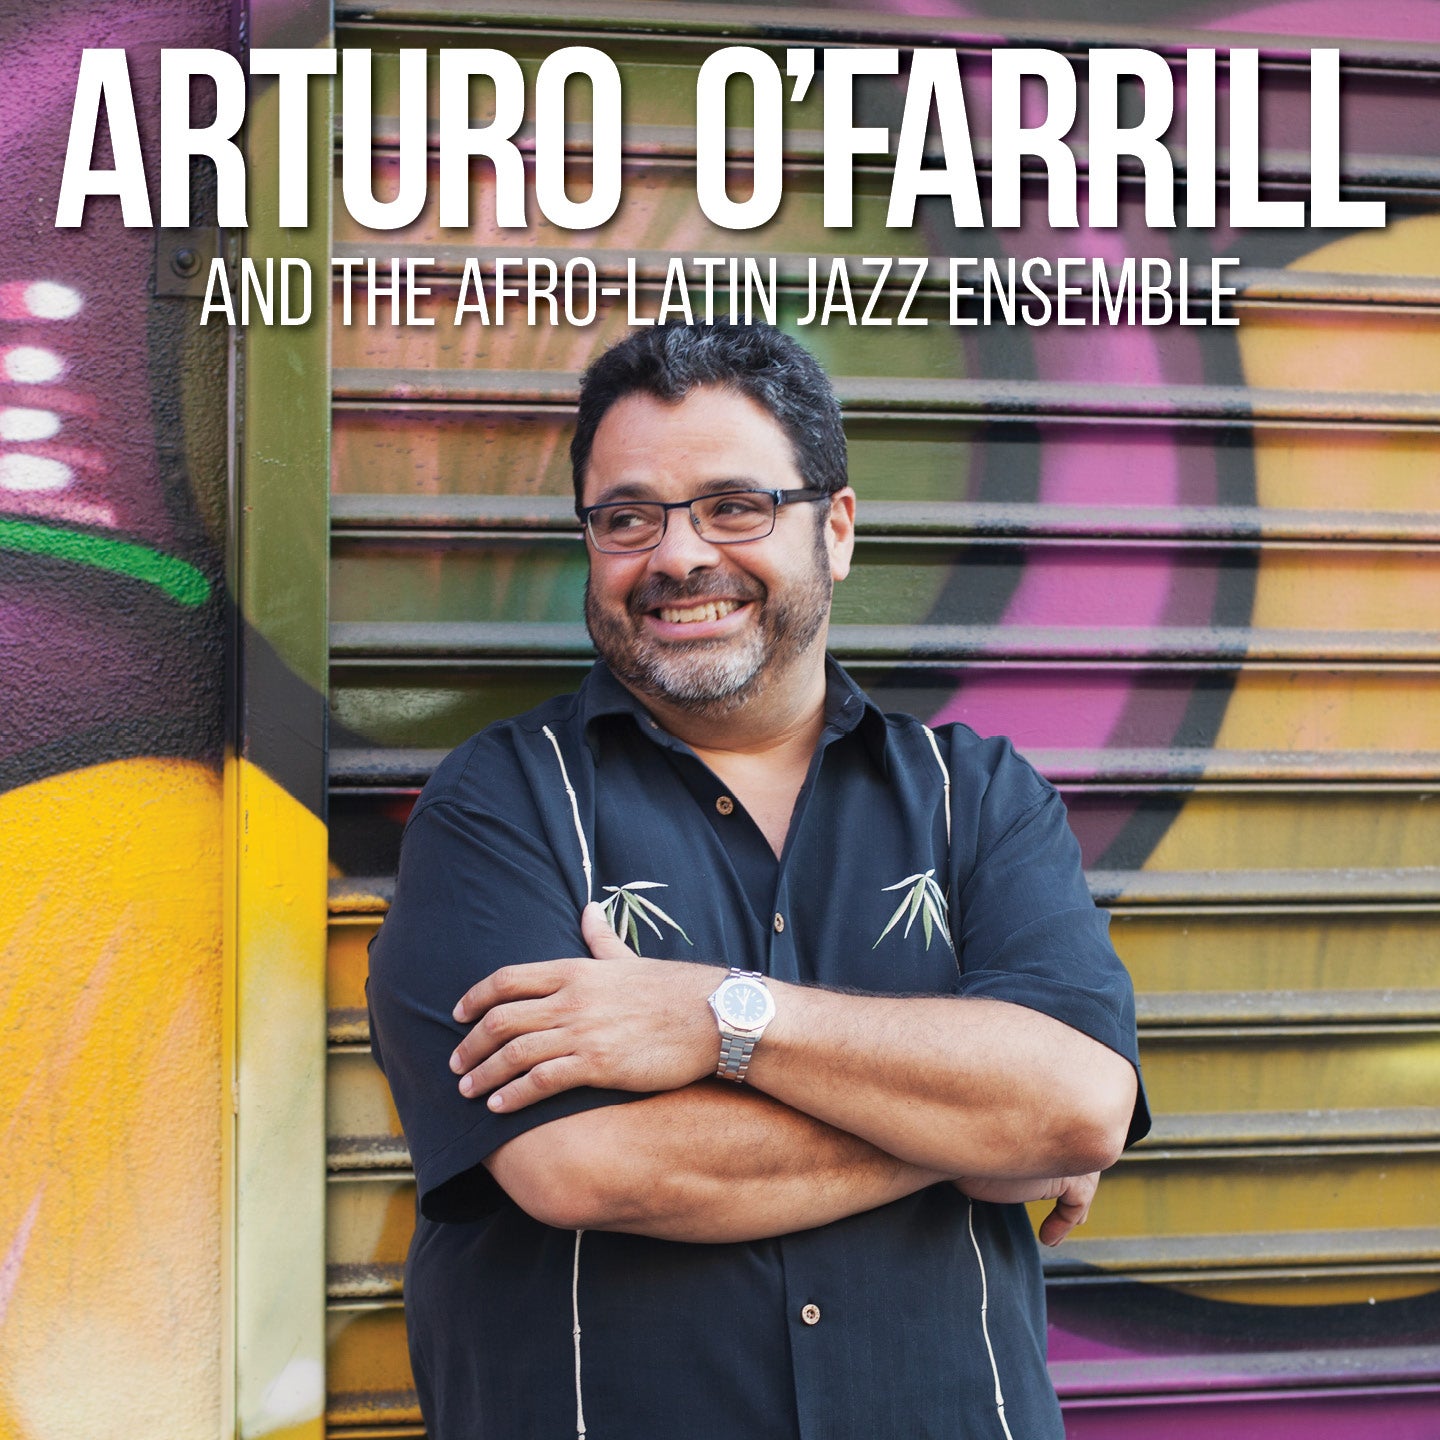 Arturo O'Farrill & The Afro Latin Jazz Ensemble